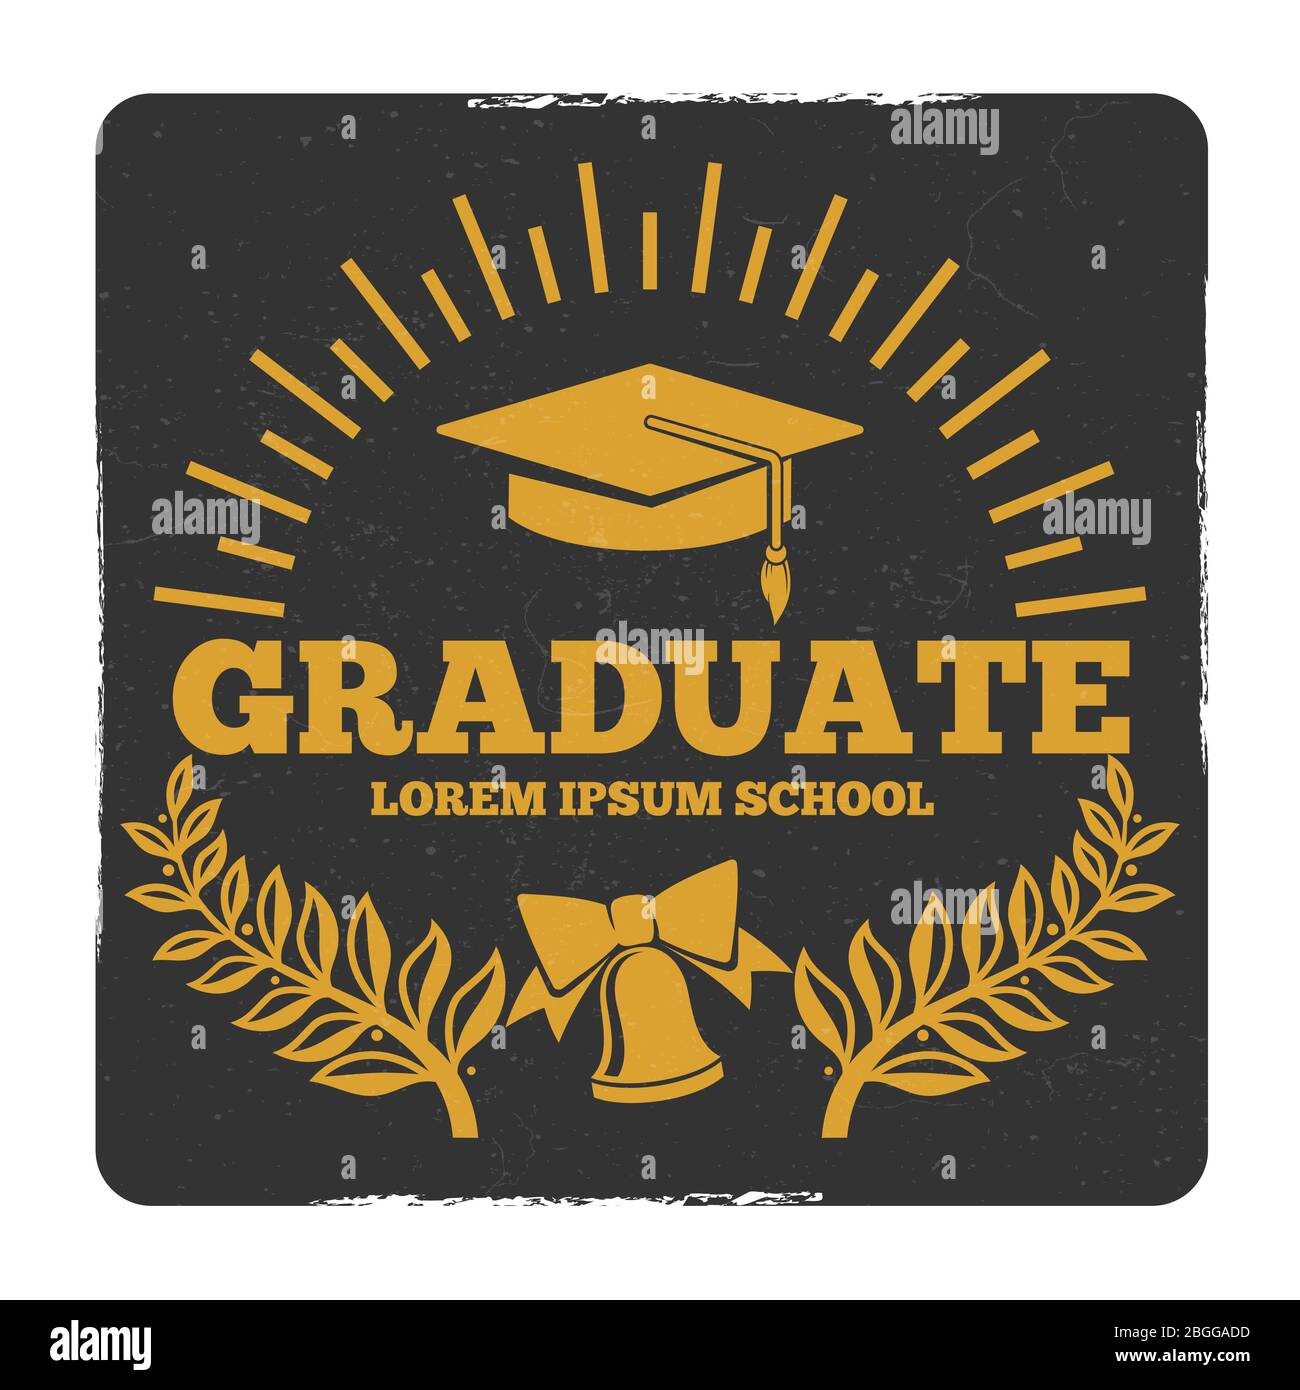 High School und College Graduierung, ab zur Schule Vektor-Logo. Grunge Graduate Label. Graduierung und Leistungserziehung, Auszeichnung Grad Illustration Stock Vektor